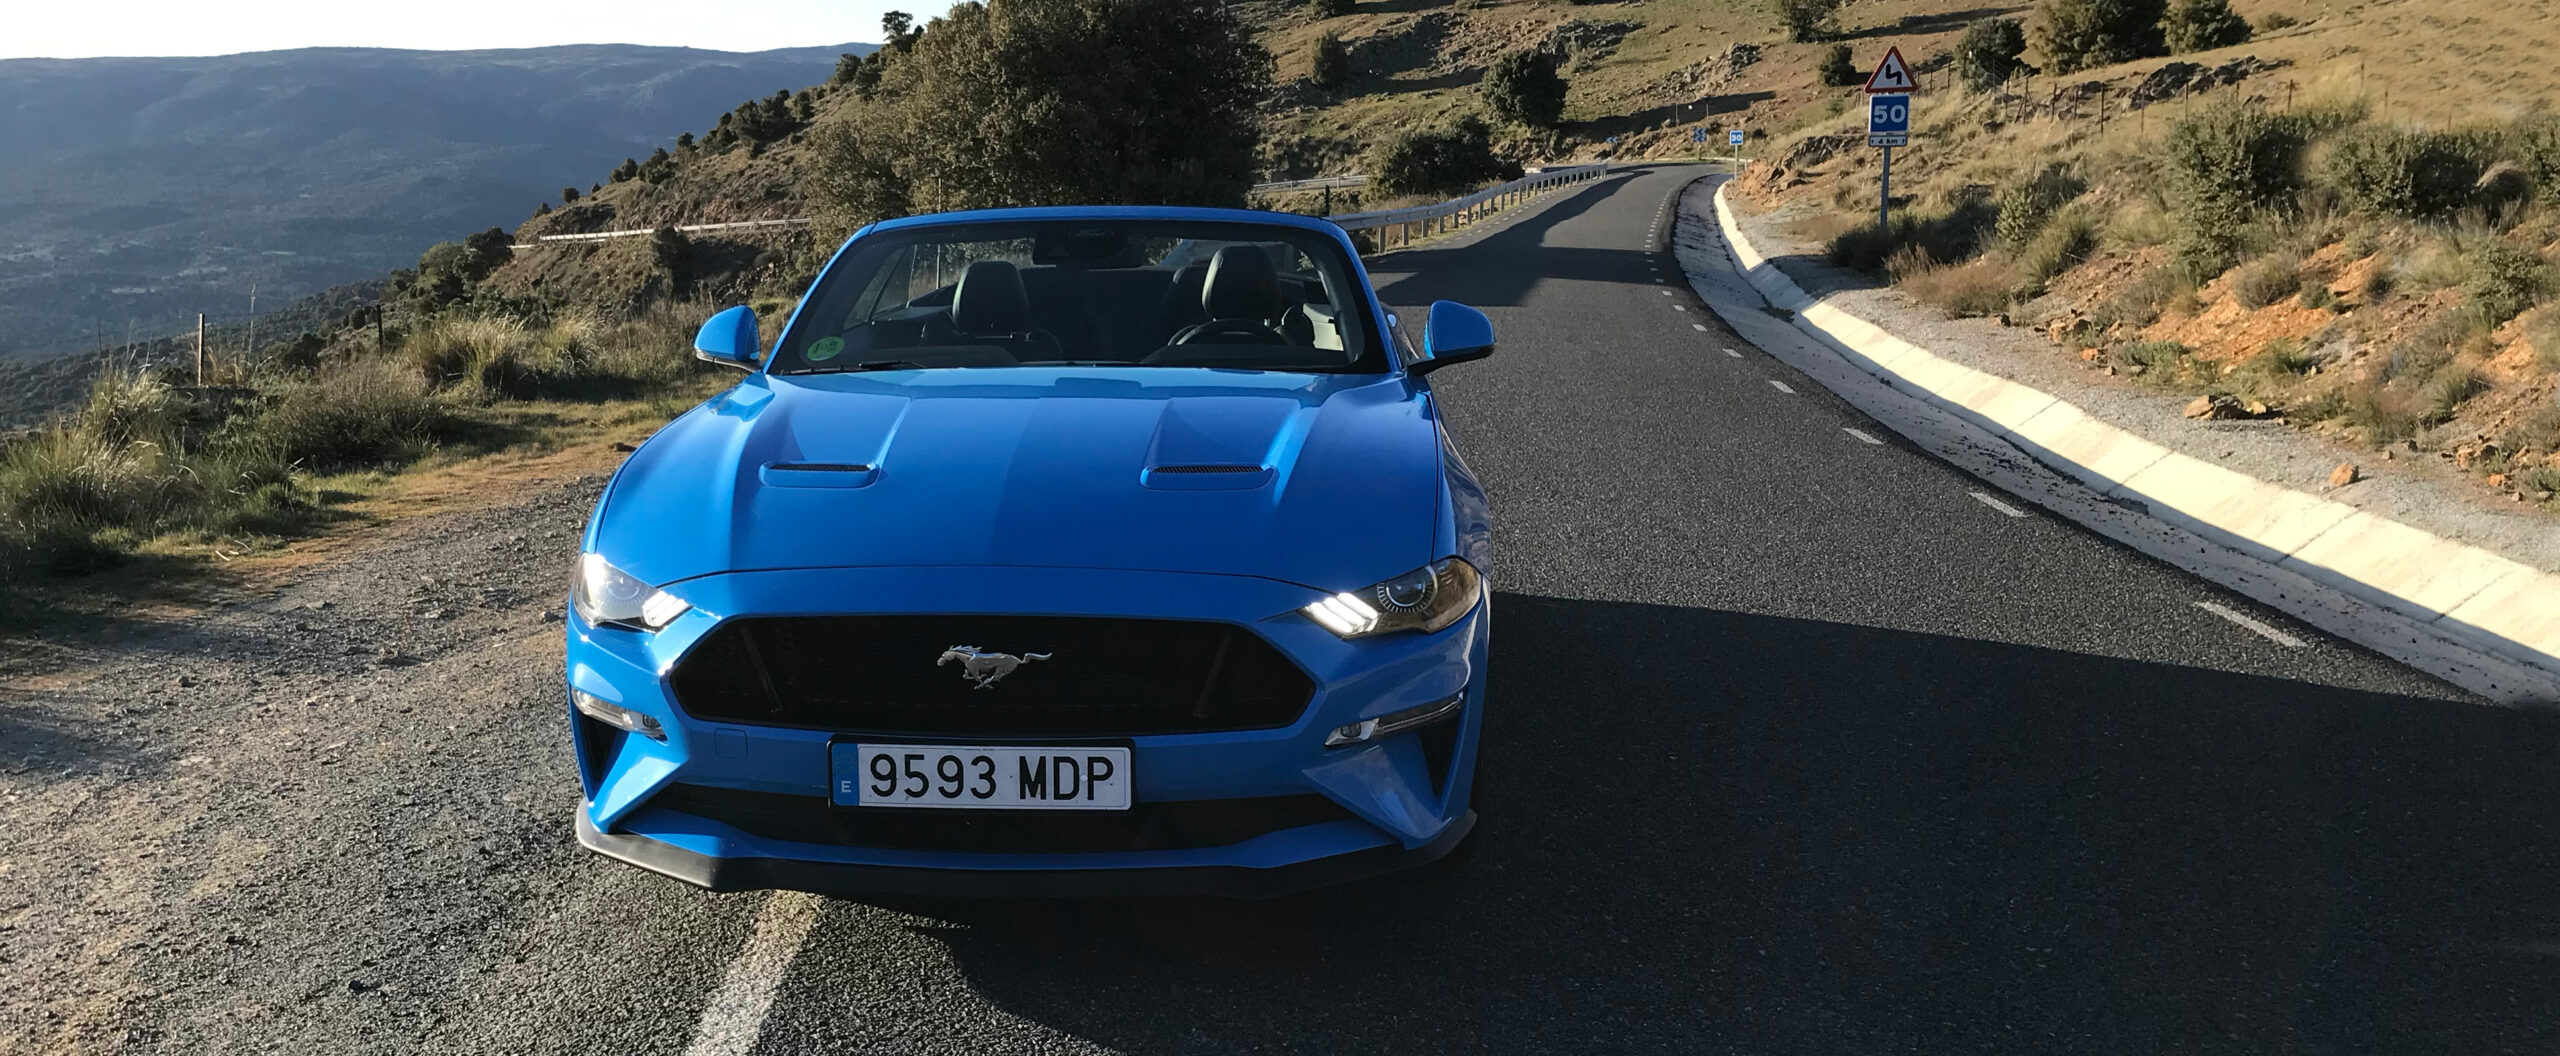 A prueba el Ford Mustang GT descapotable, para disfrutar de la libertad sin límites